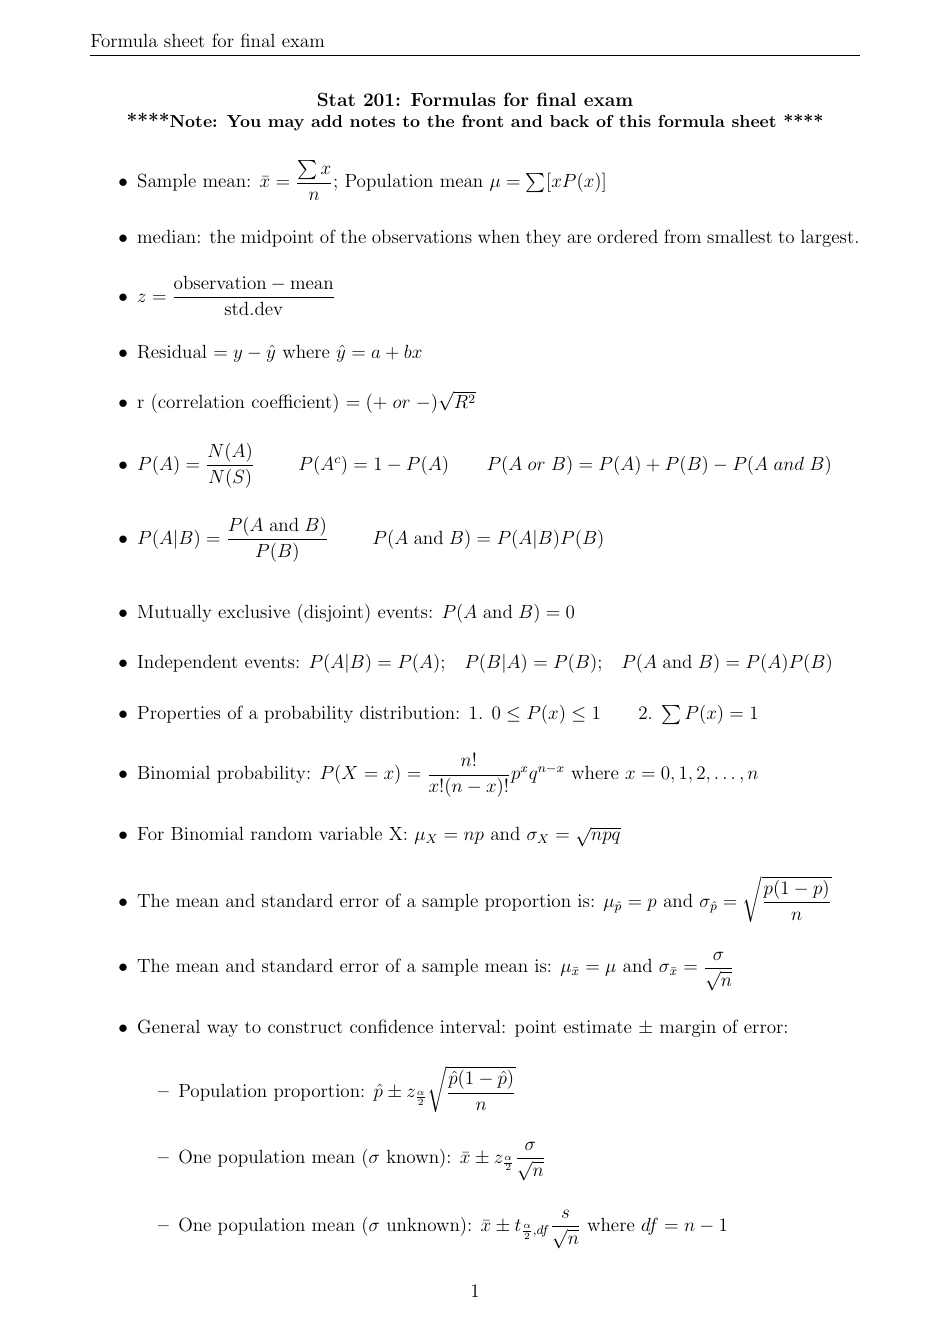 Stat 201 Final Exam Formula Sheet